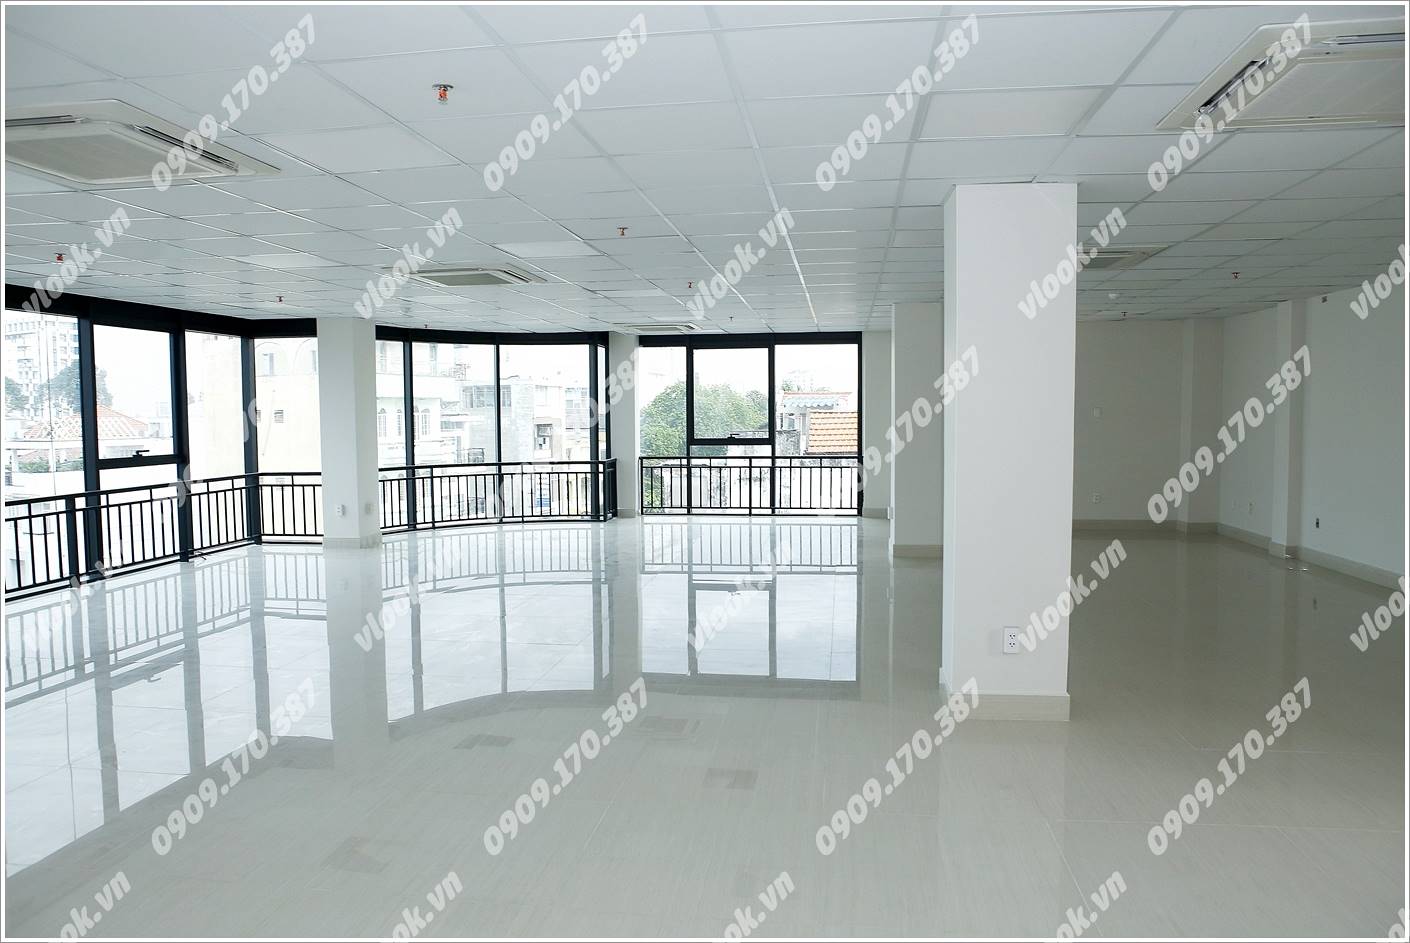 Cao ốc cho thuê văn phòng MHPC Building, Nguyễn Huy Lượng, Quận Bình Thạnh, TPHCM - vlook.vn